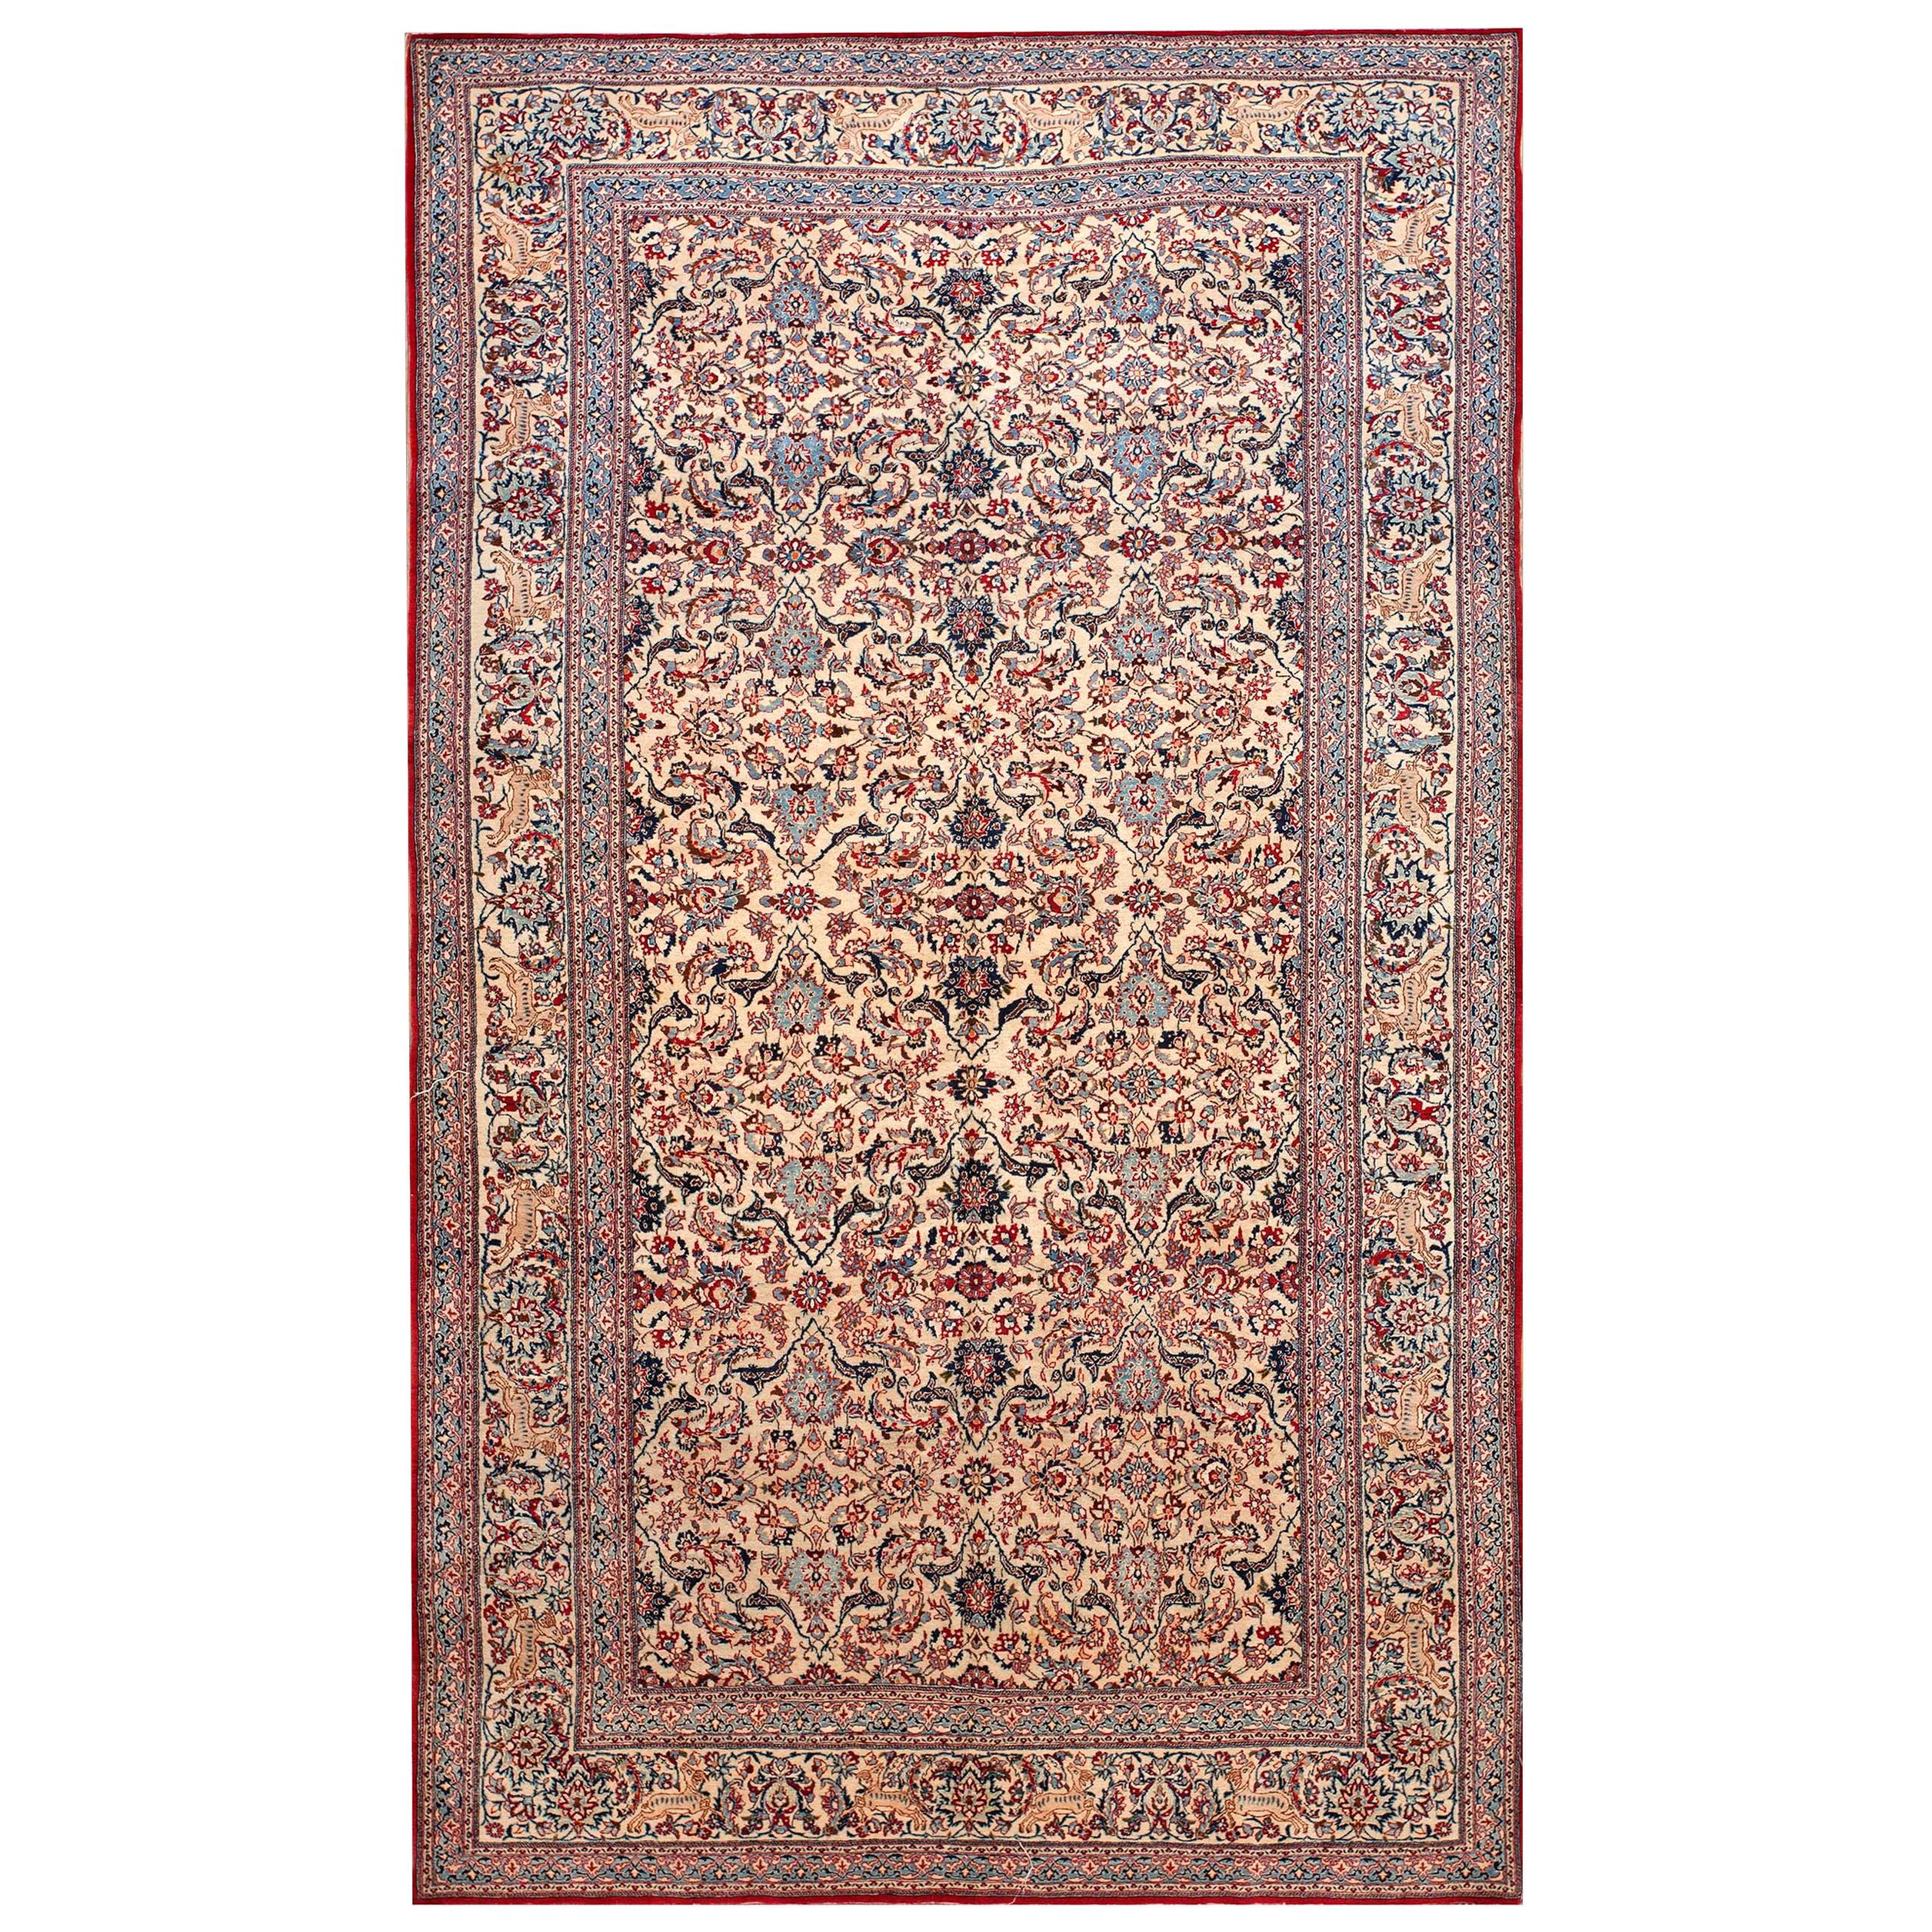 Mitte des 20. Jahrhunderts Persischer Nain Teppich ( 5'3" x 8'4" - 160 x 254 )